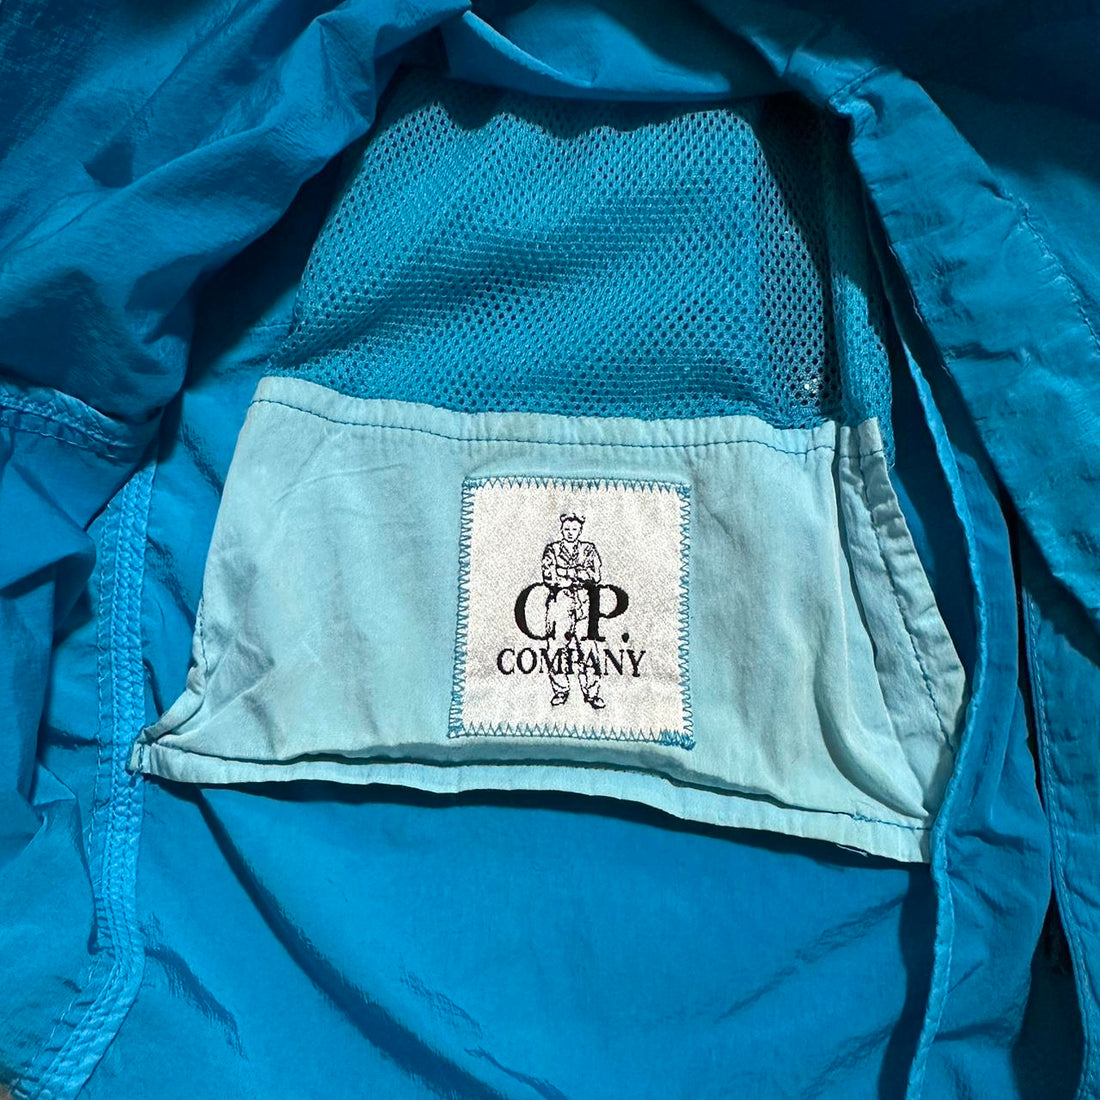 CP Company Blue Chrome Nylon Goggle Jacket